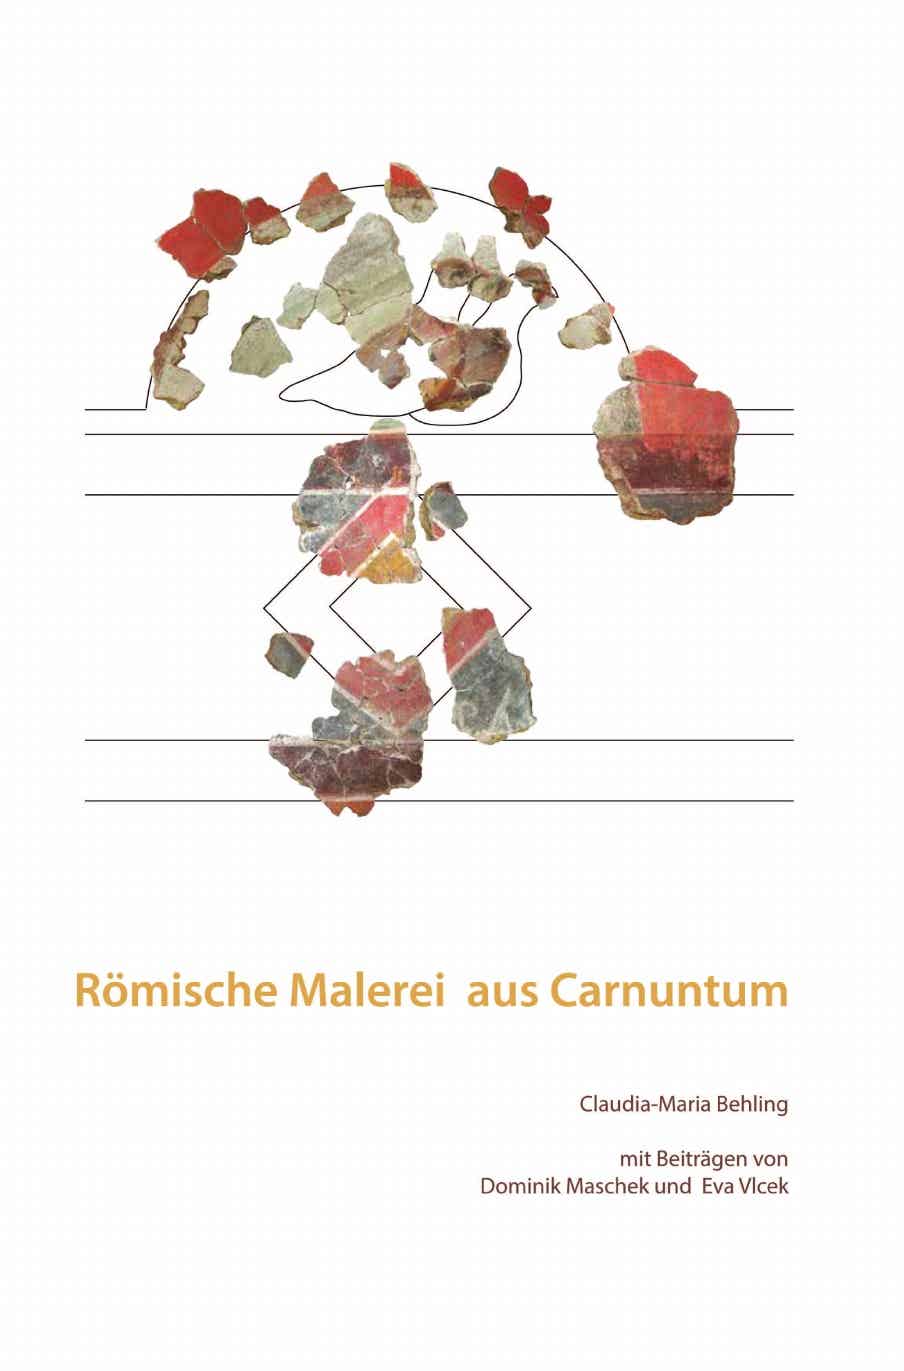 Behling, Claudia-Maria; Römische Malerei aus Carnuntum. Alt- und Neufunde ausgewählter Komplexe der Zivilstadt